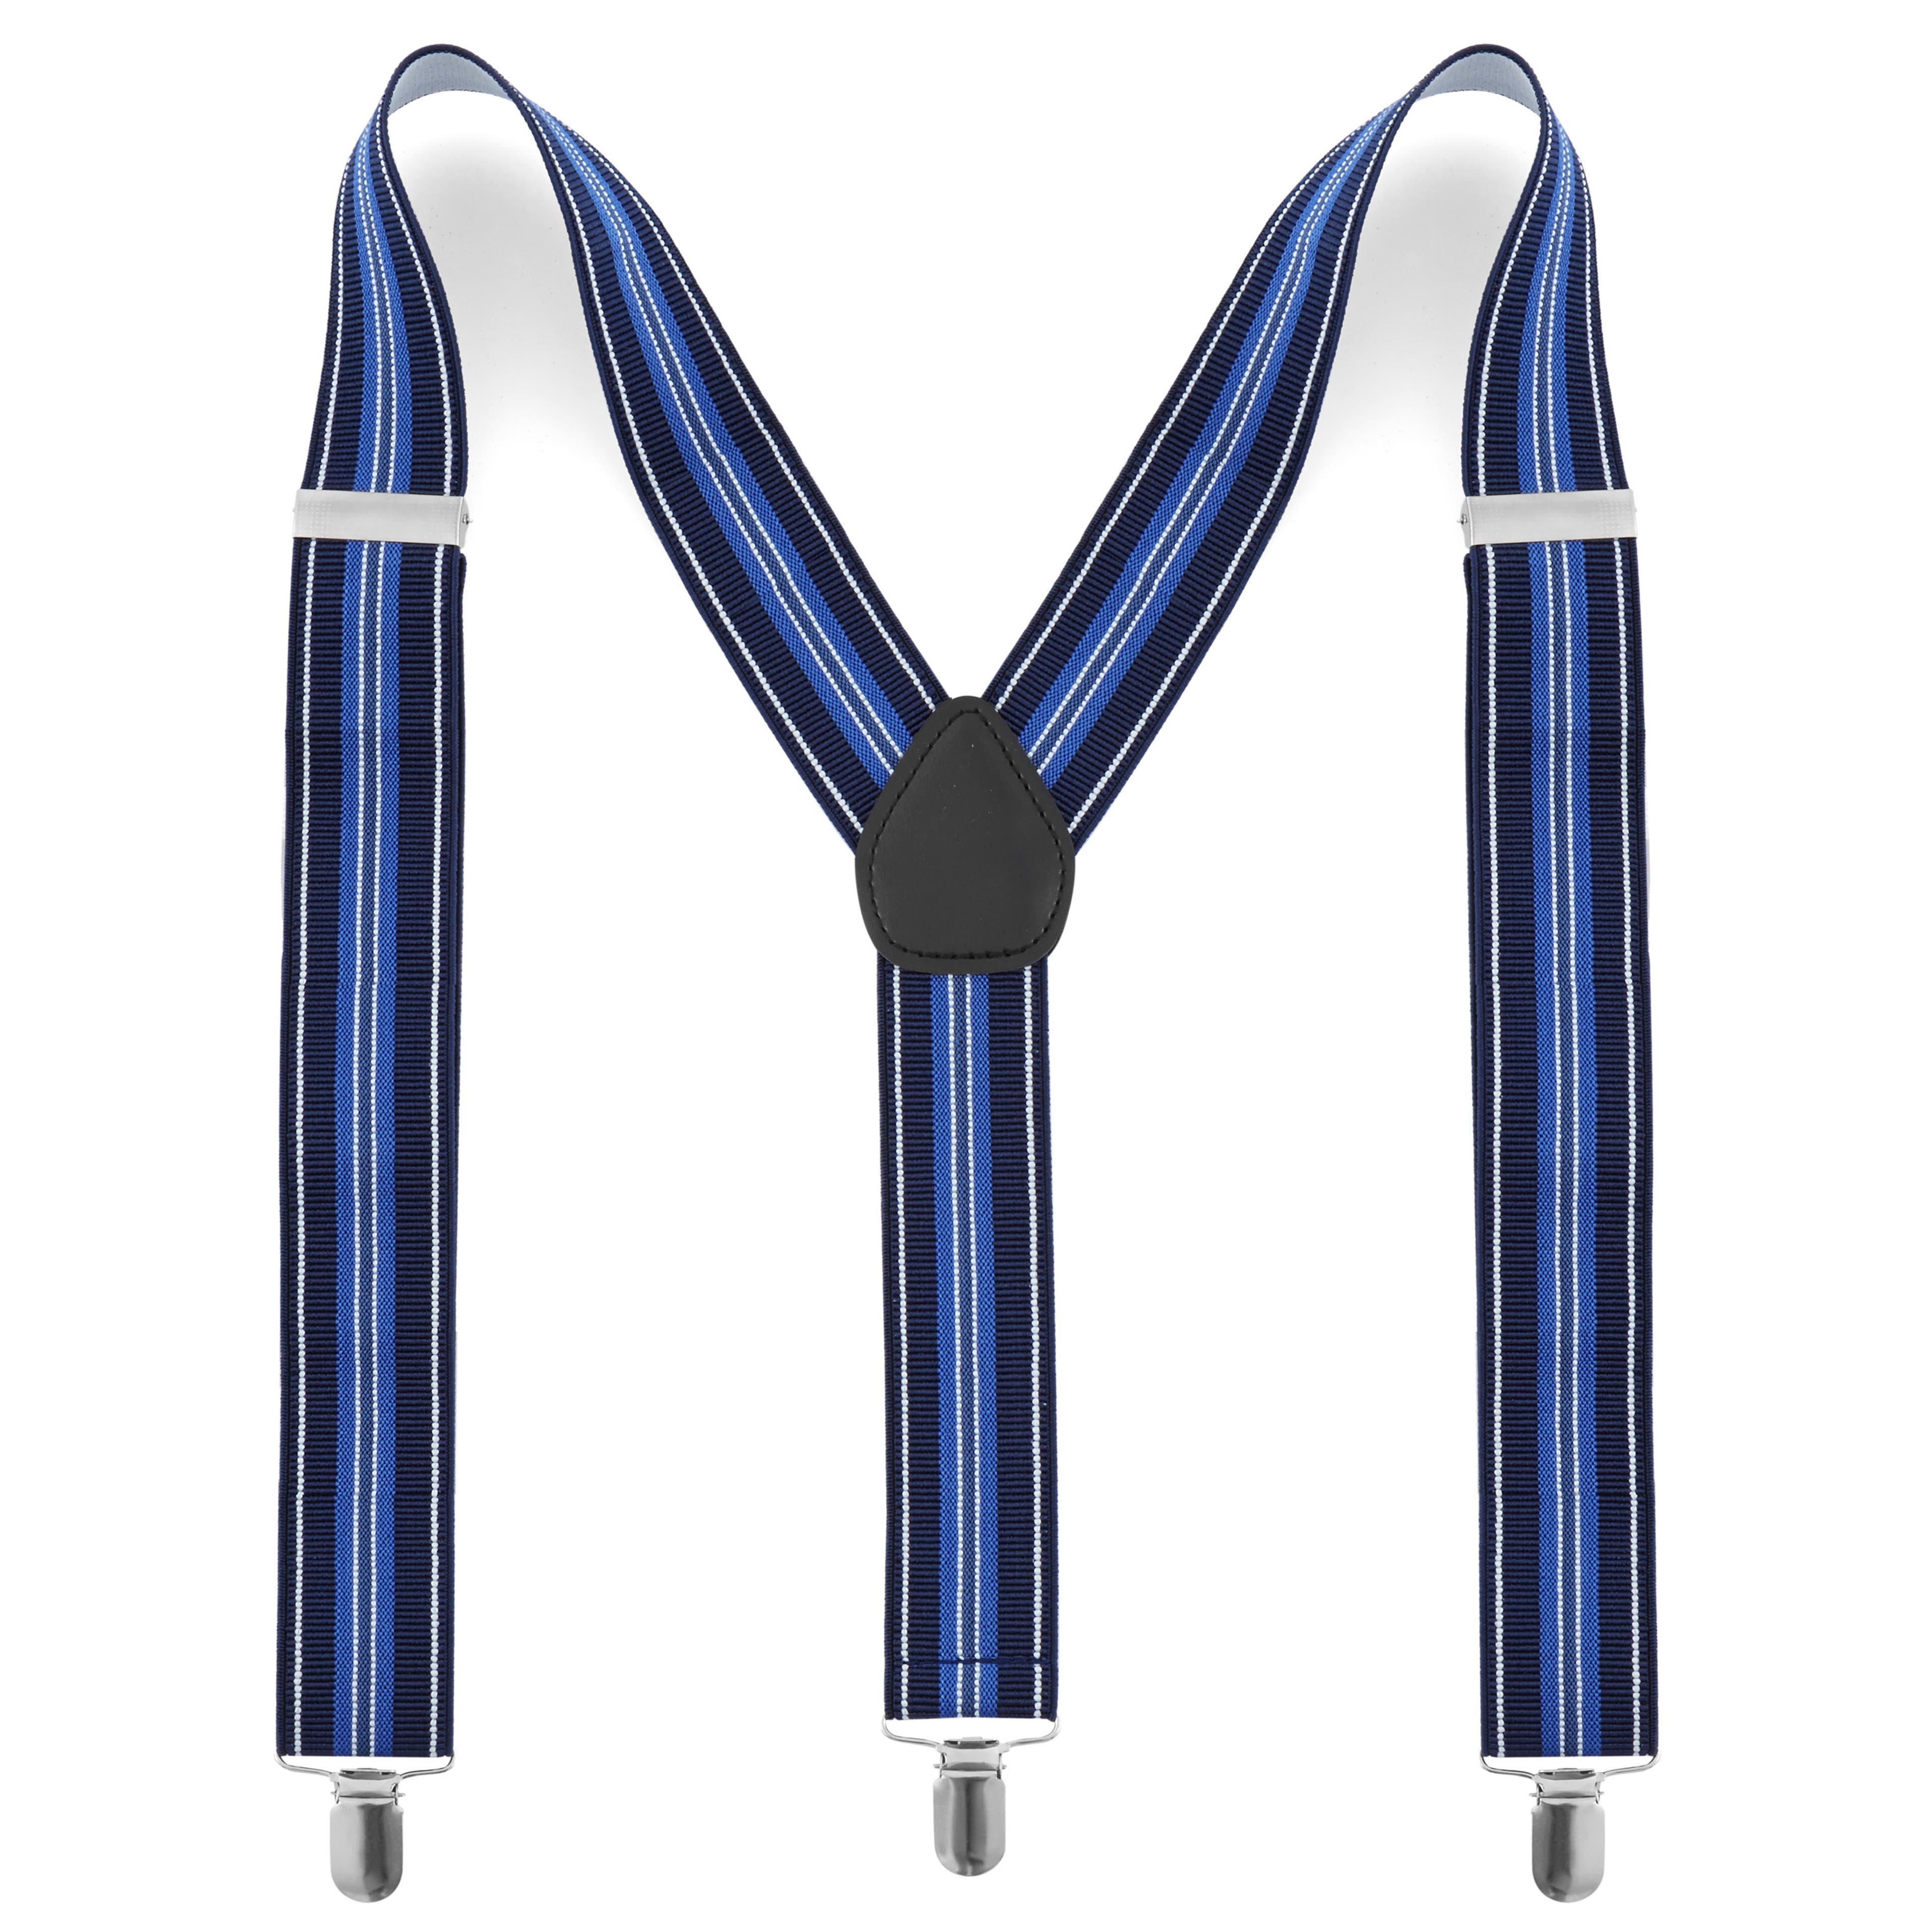  Royal Blue Suspenders